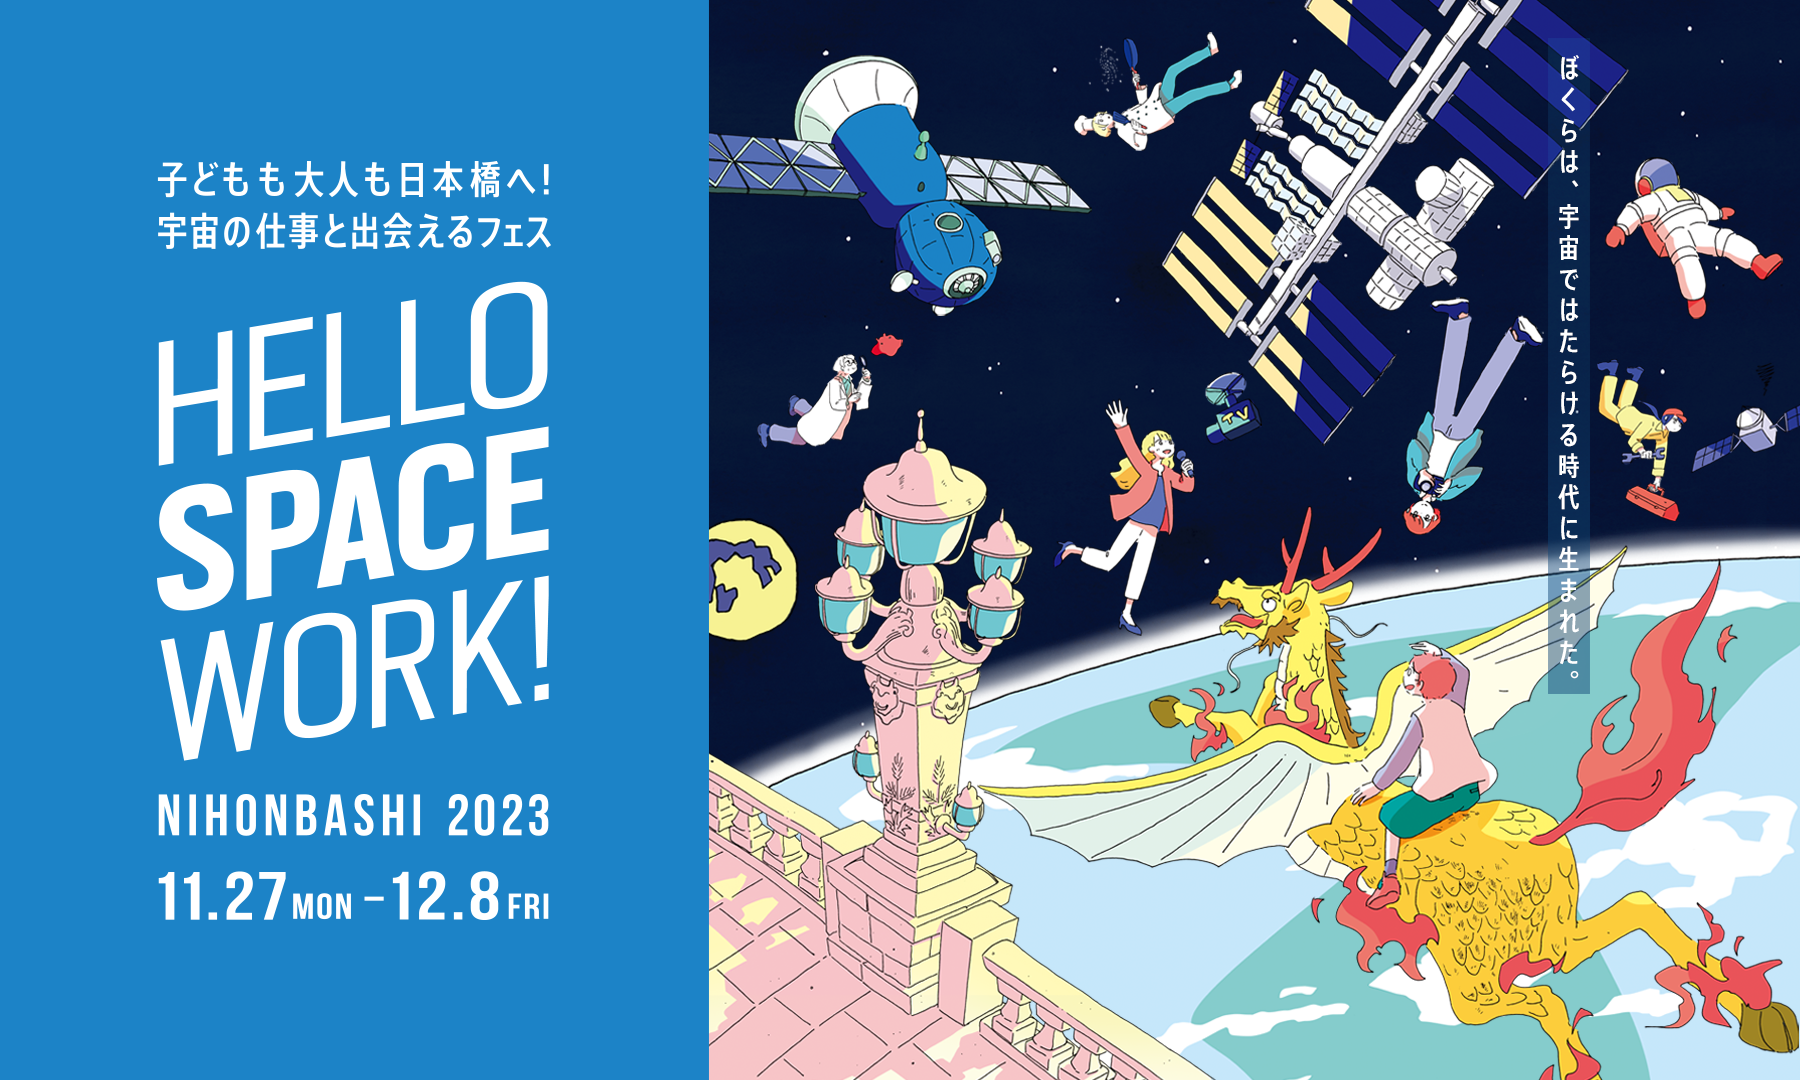 「HELLO SPACE WORK！NIHONBASHI 2023」への参加のお知らせ